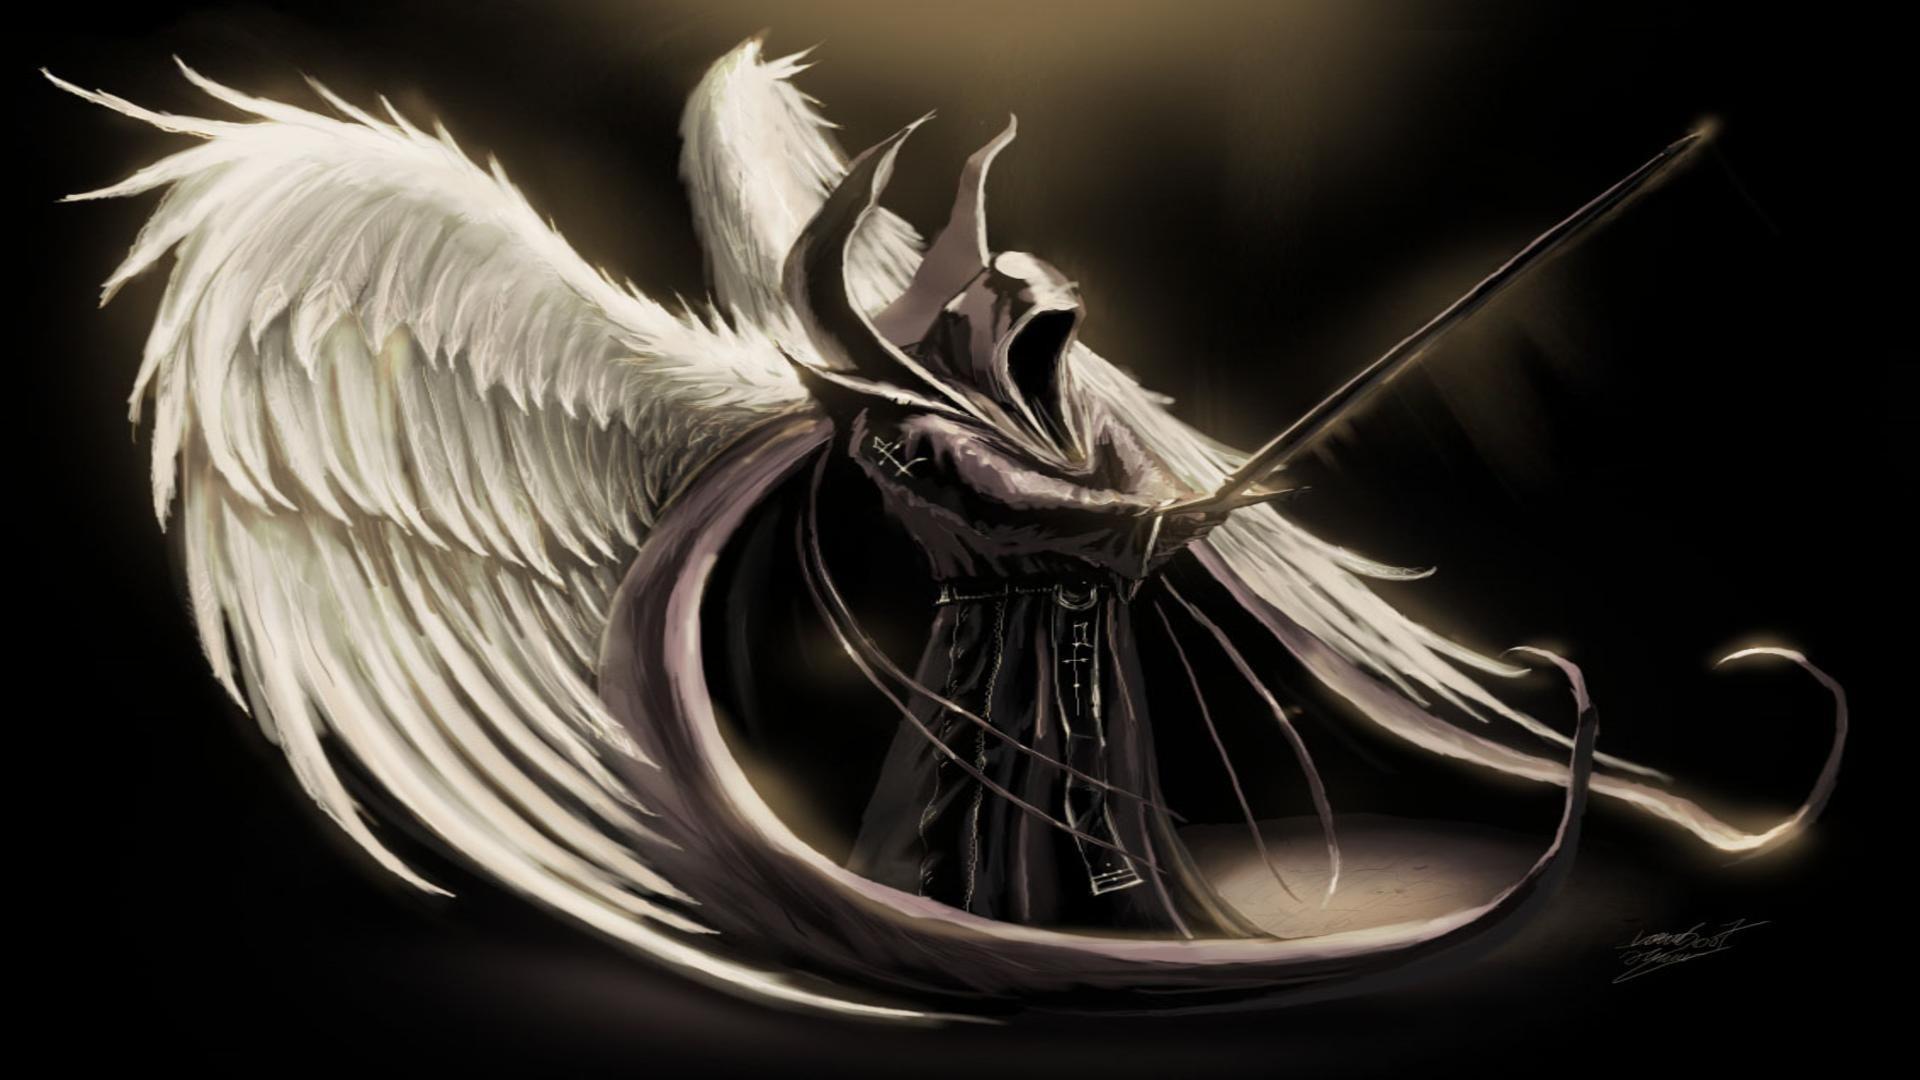 Dark angel wings free desktop background wallpaper image